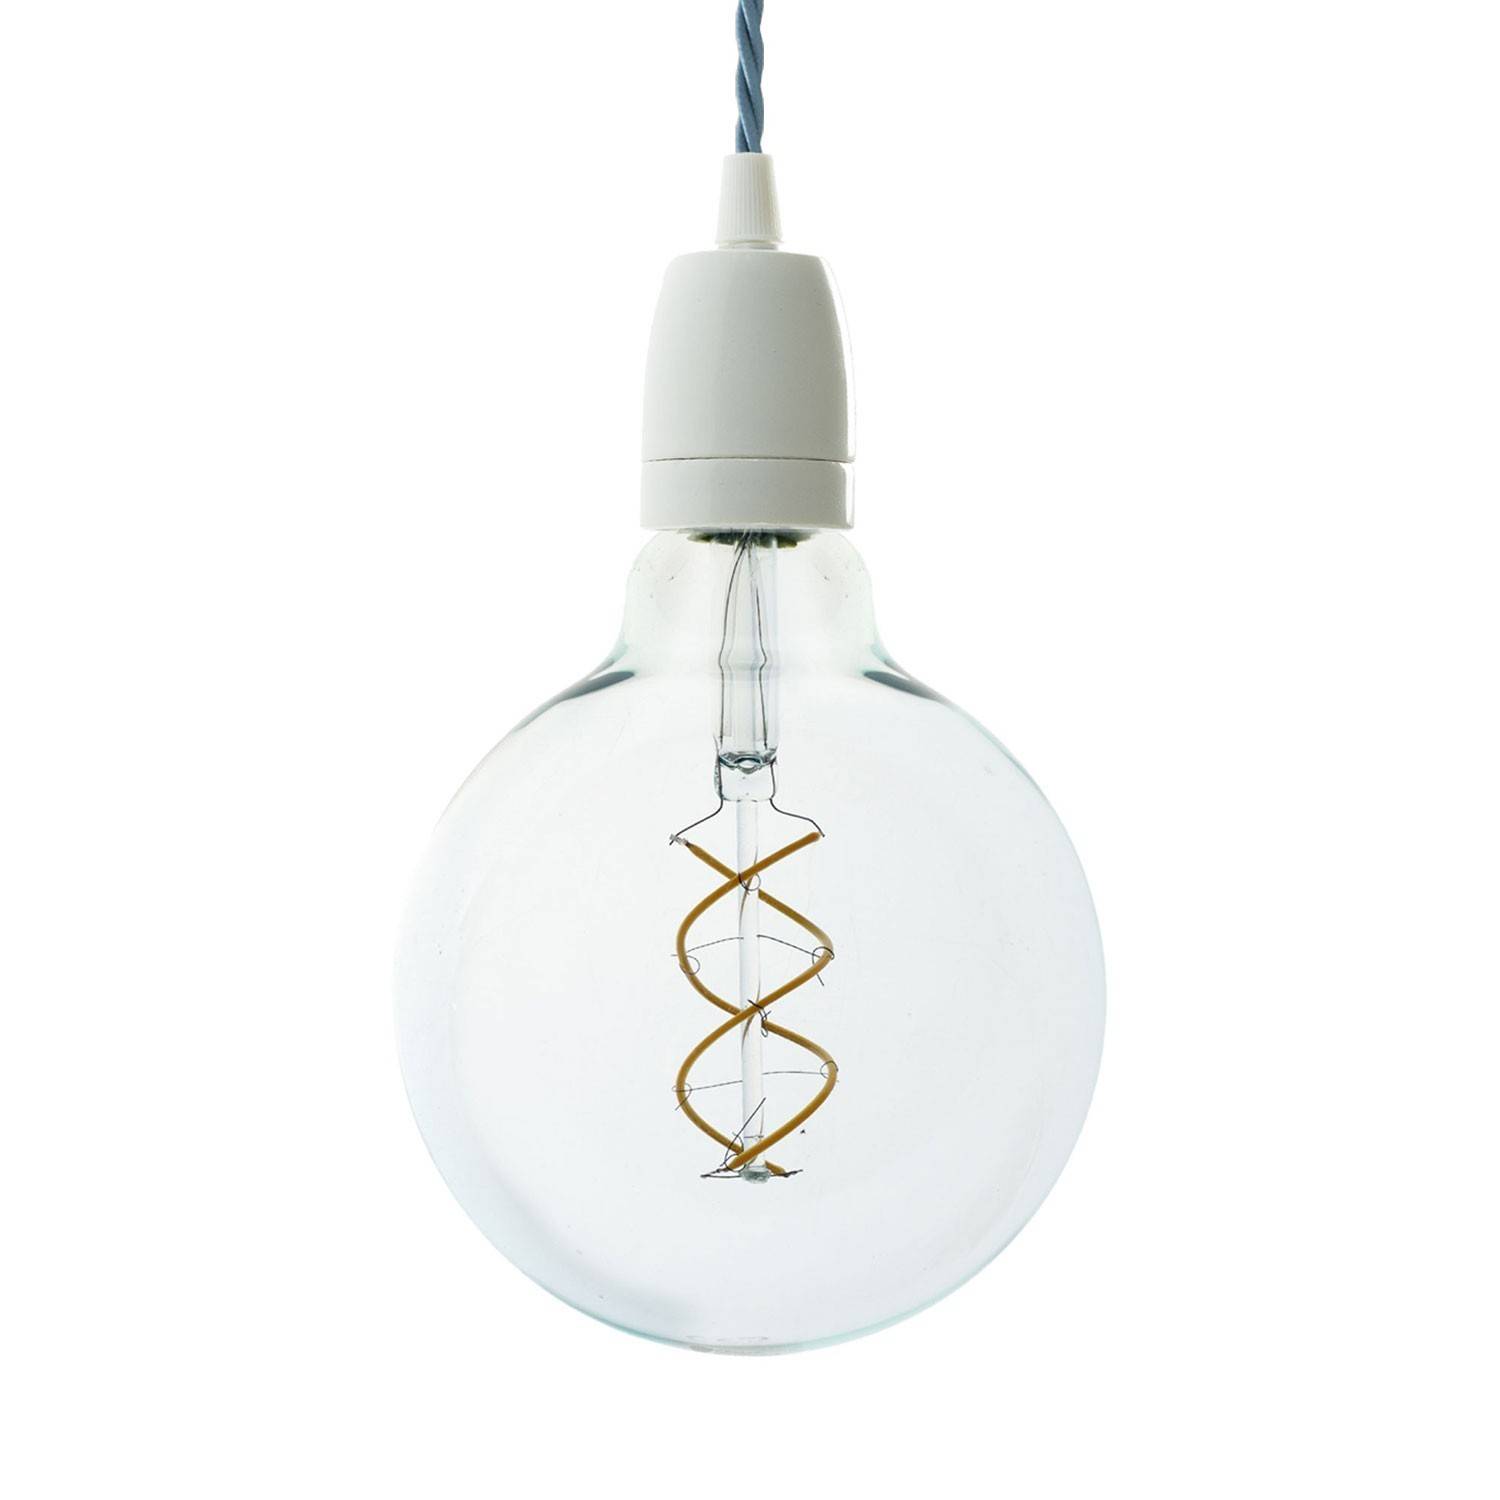 Lámpara colgante hecha en Italia con cable textil trenzado, bombilla y acabados de porcelana blanca